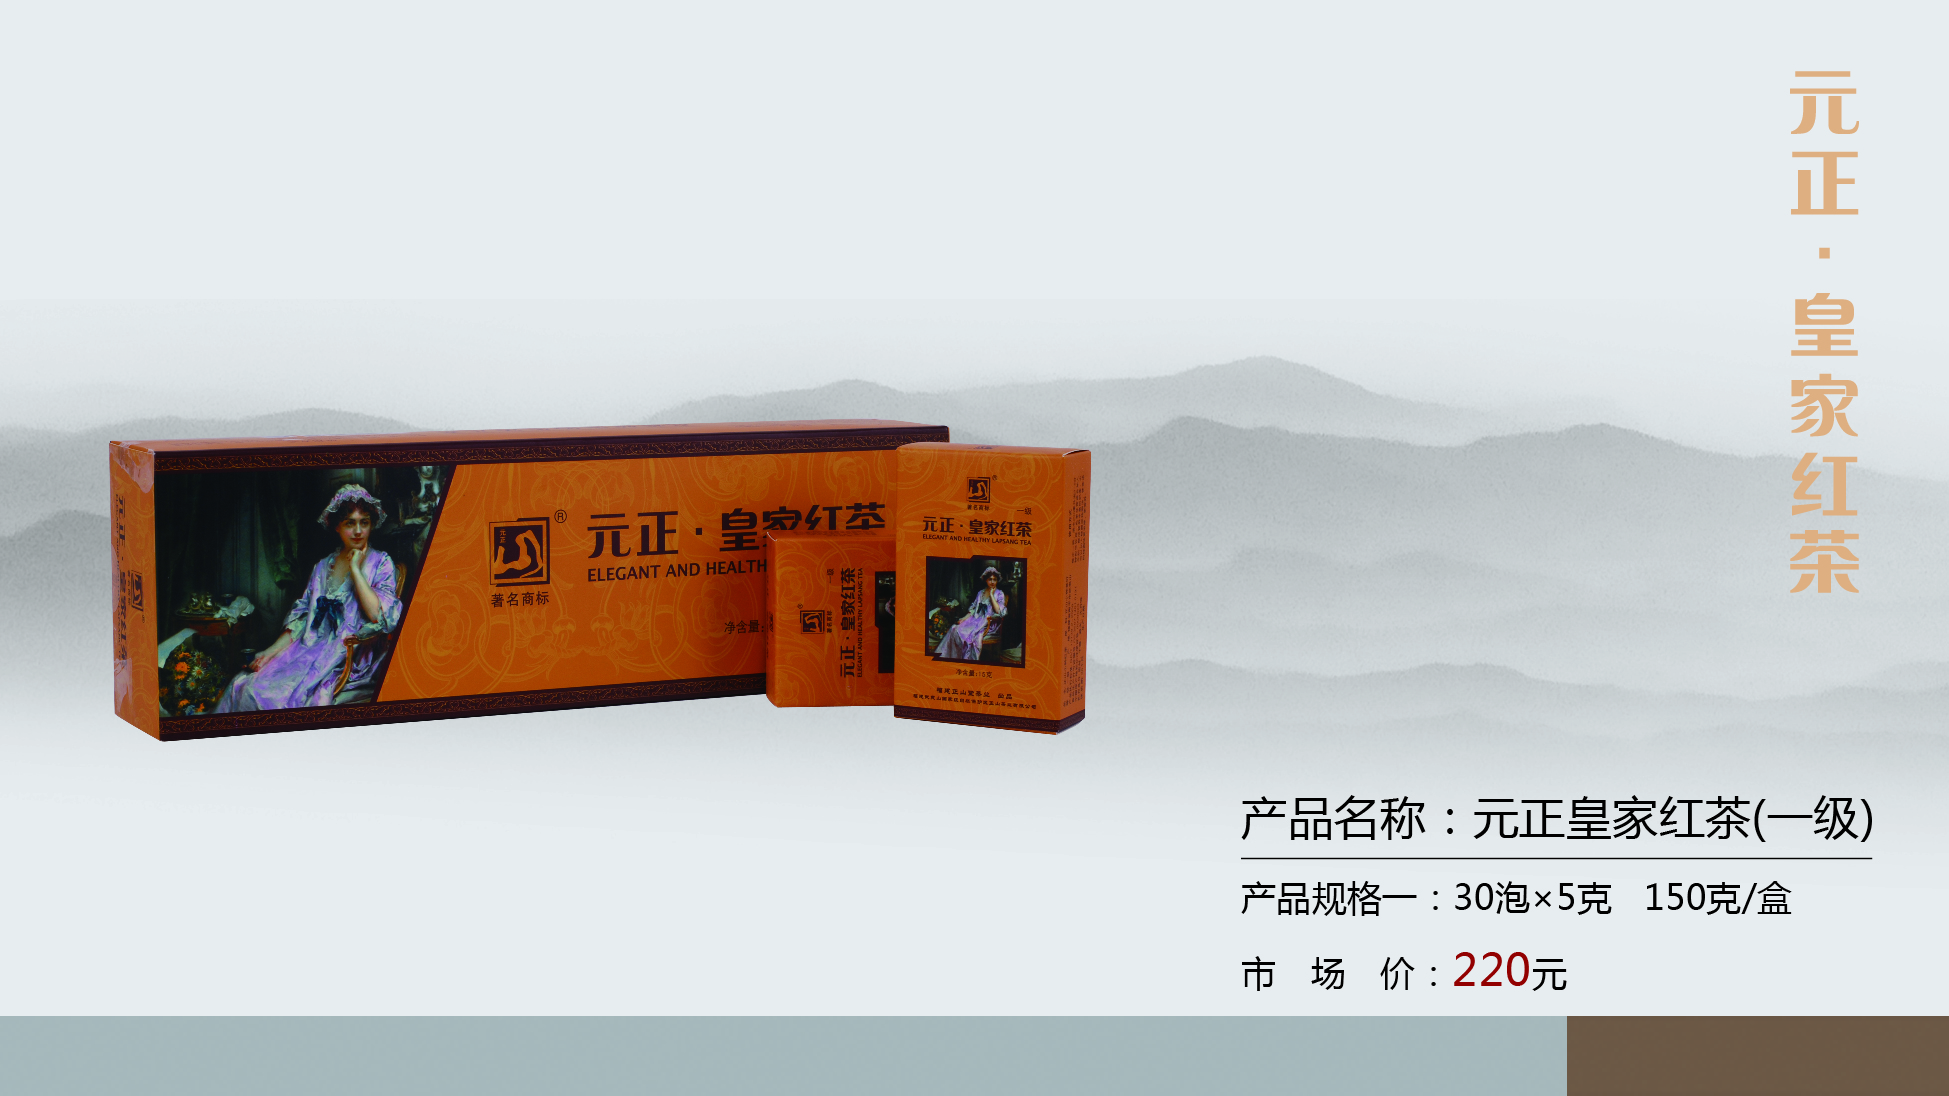 正山堂茶业旗下中国驰名商标“元正”牌系列红茶